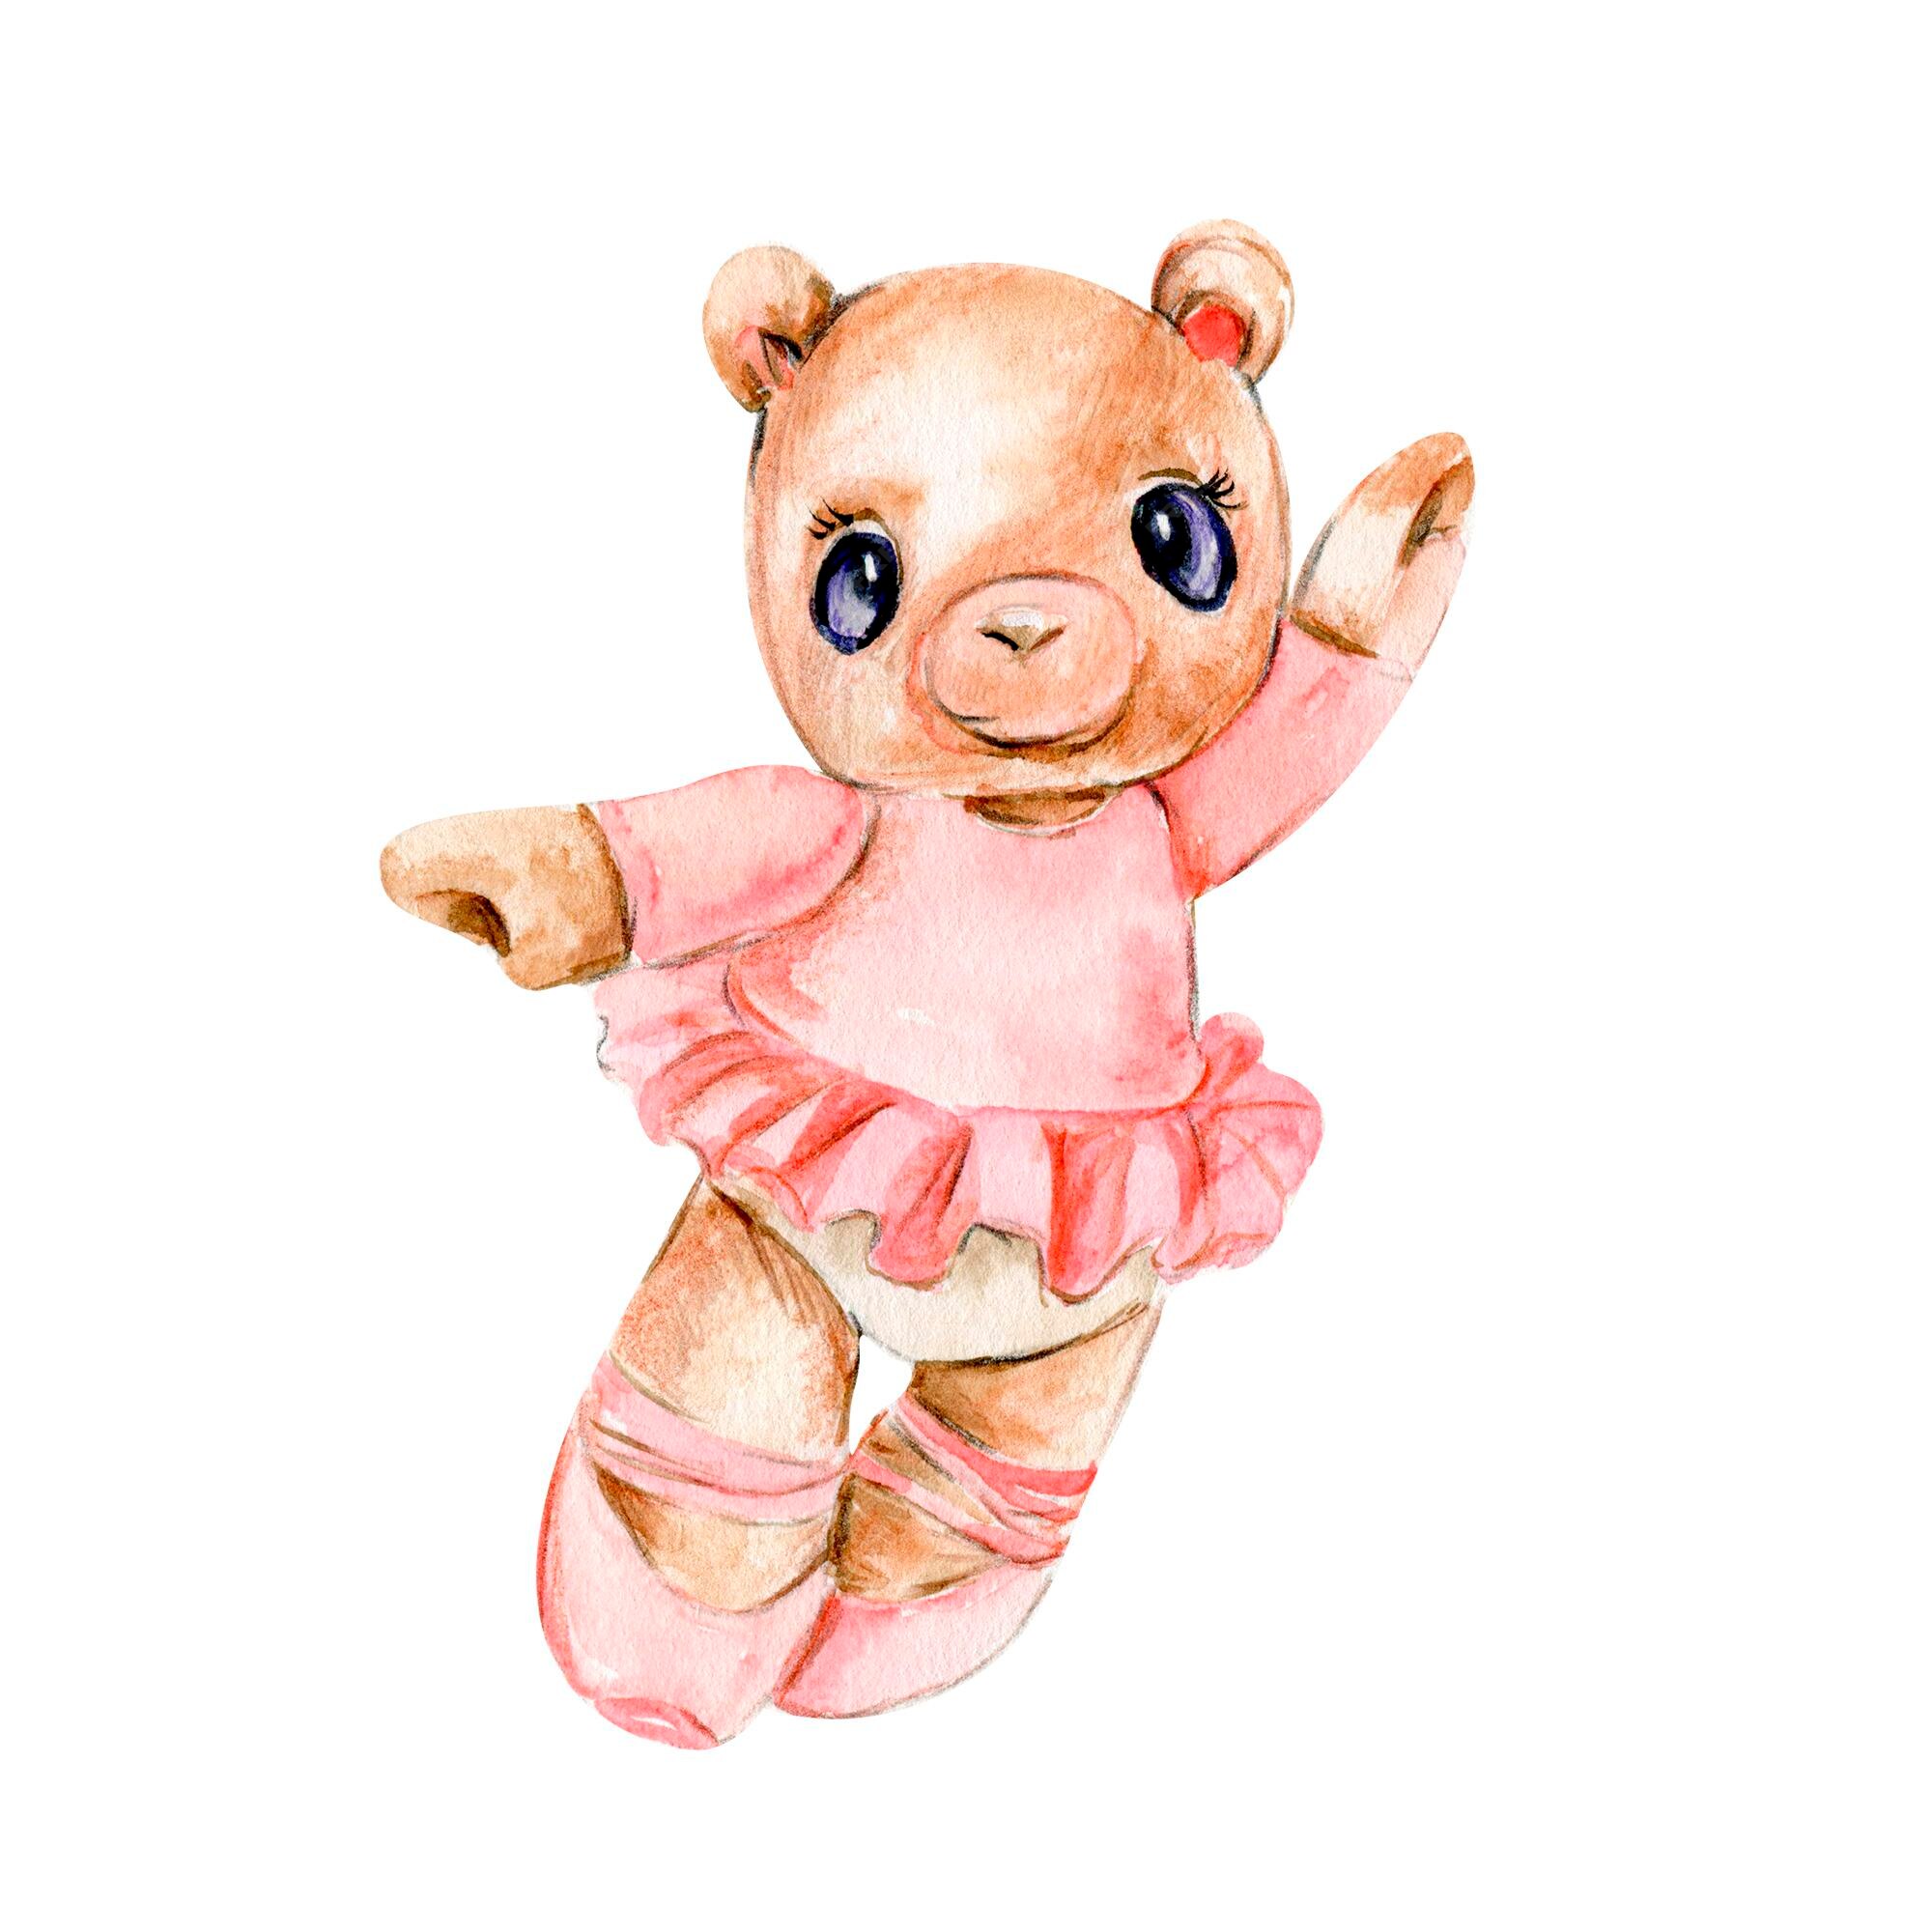 Dancing Bear Pink Dress emily dean